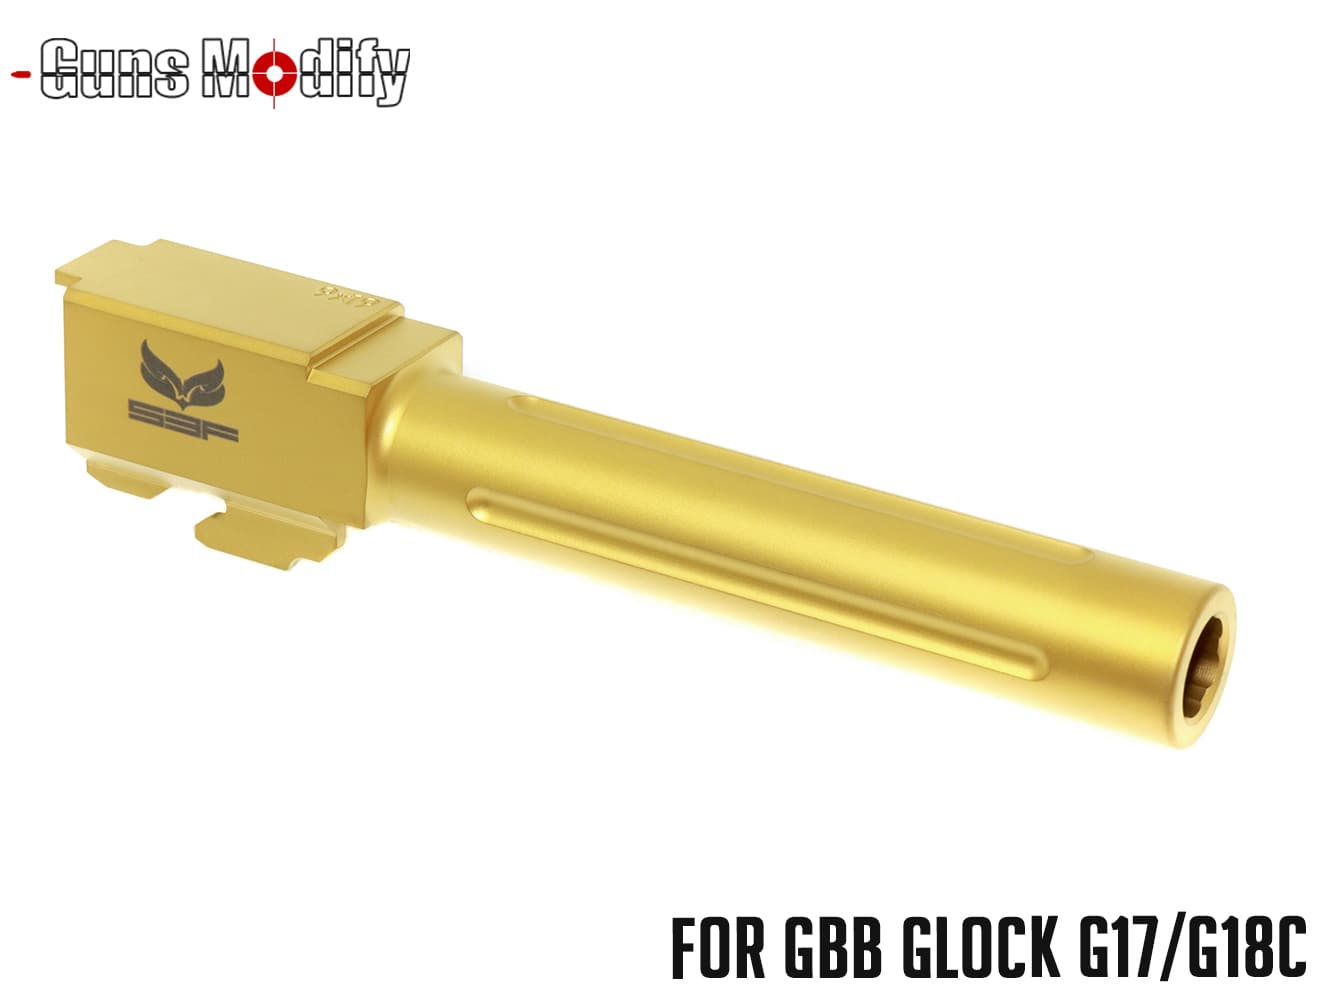 Guns Modify S3F G17 フルートタイプバレル (14mm逆ネジ) 東京マルイ G17、22用 ゴールド